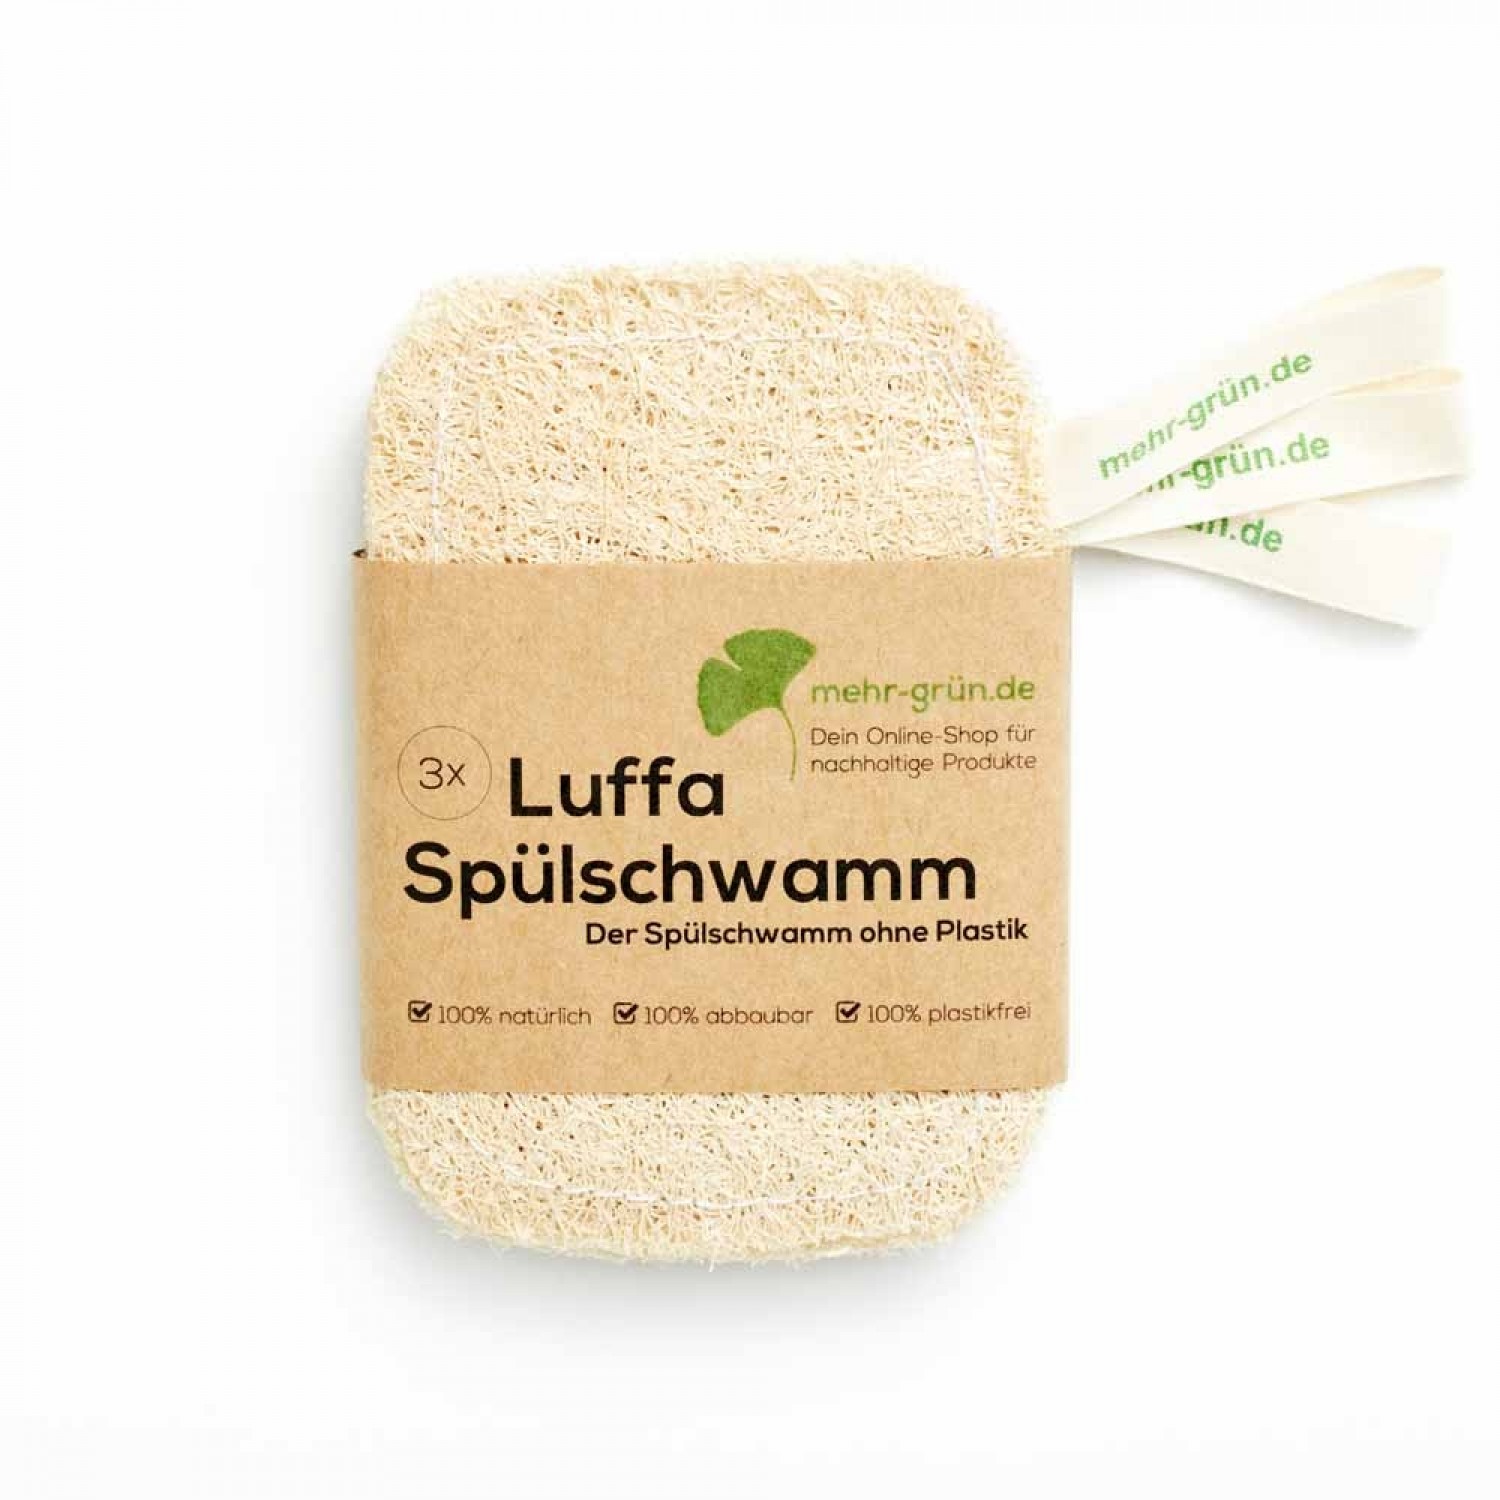 Luffa Spülschwamm 3er Pack Öko-Spülschwamm » mehr grün